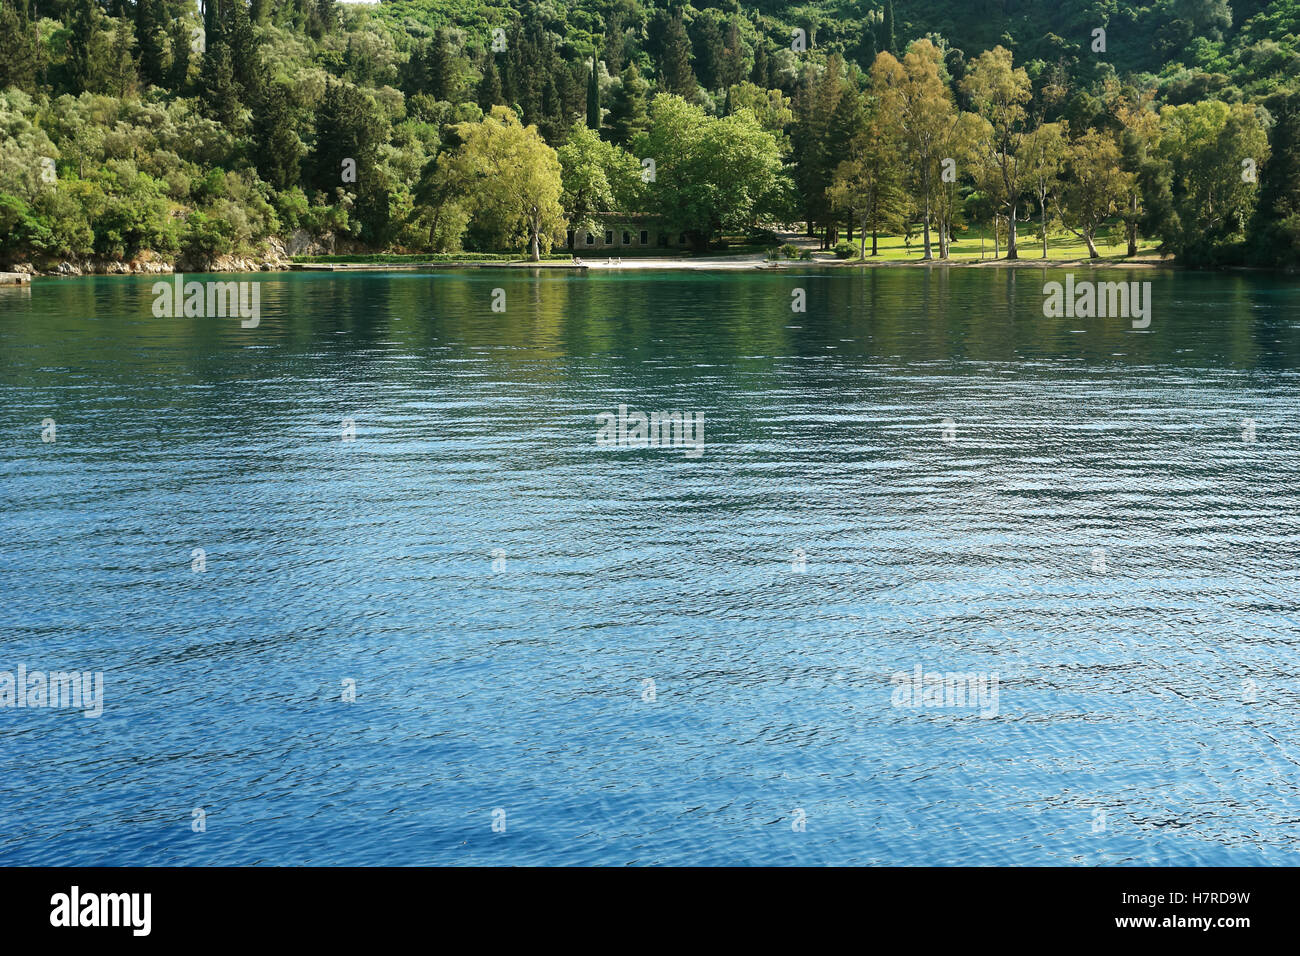 Skorpios, Griechenland, 11. Mai 2013: Landschaft mit grünen Garten und Häuschen in der Bucht auf der griechischen Insel. Ionisches Meer, Griechenland. Stockfoto